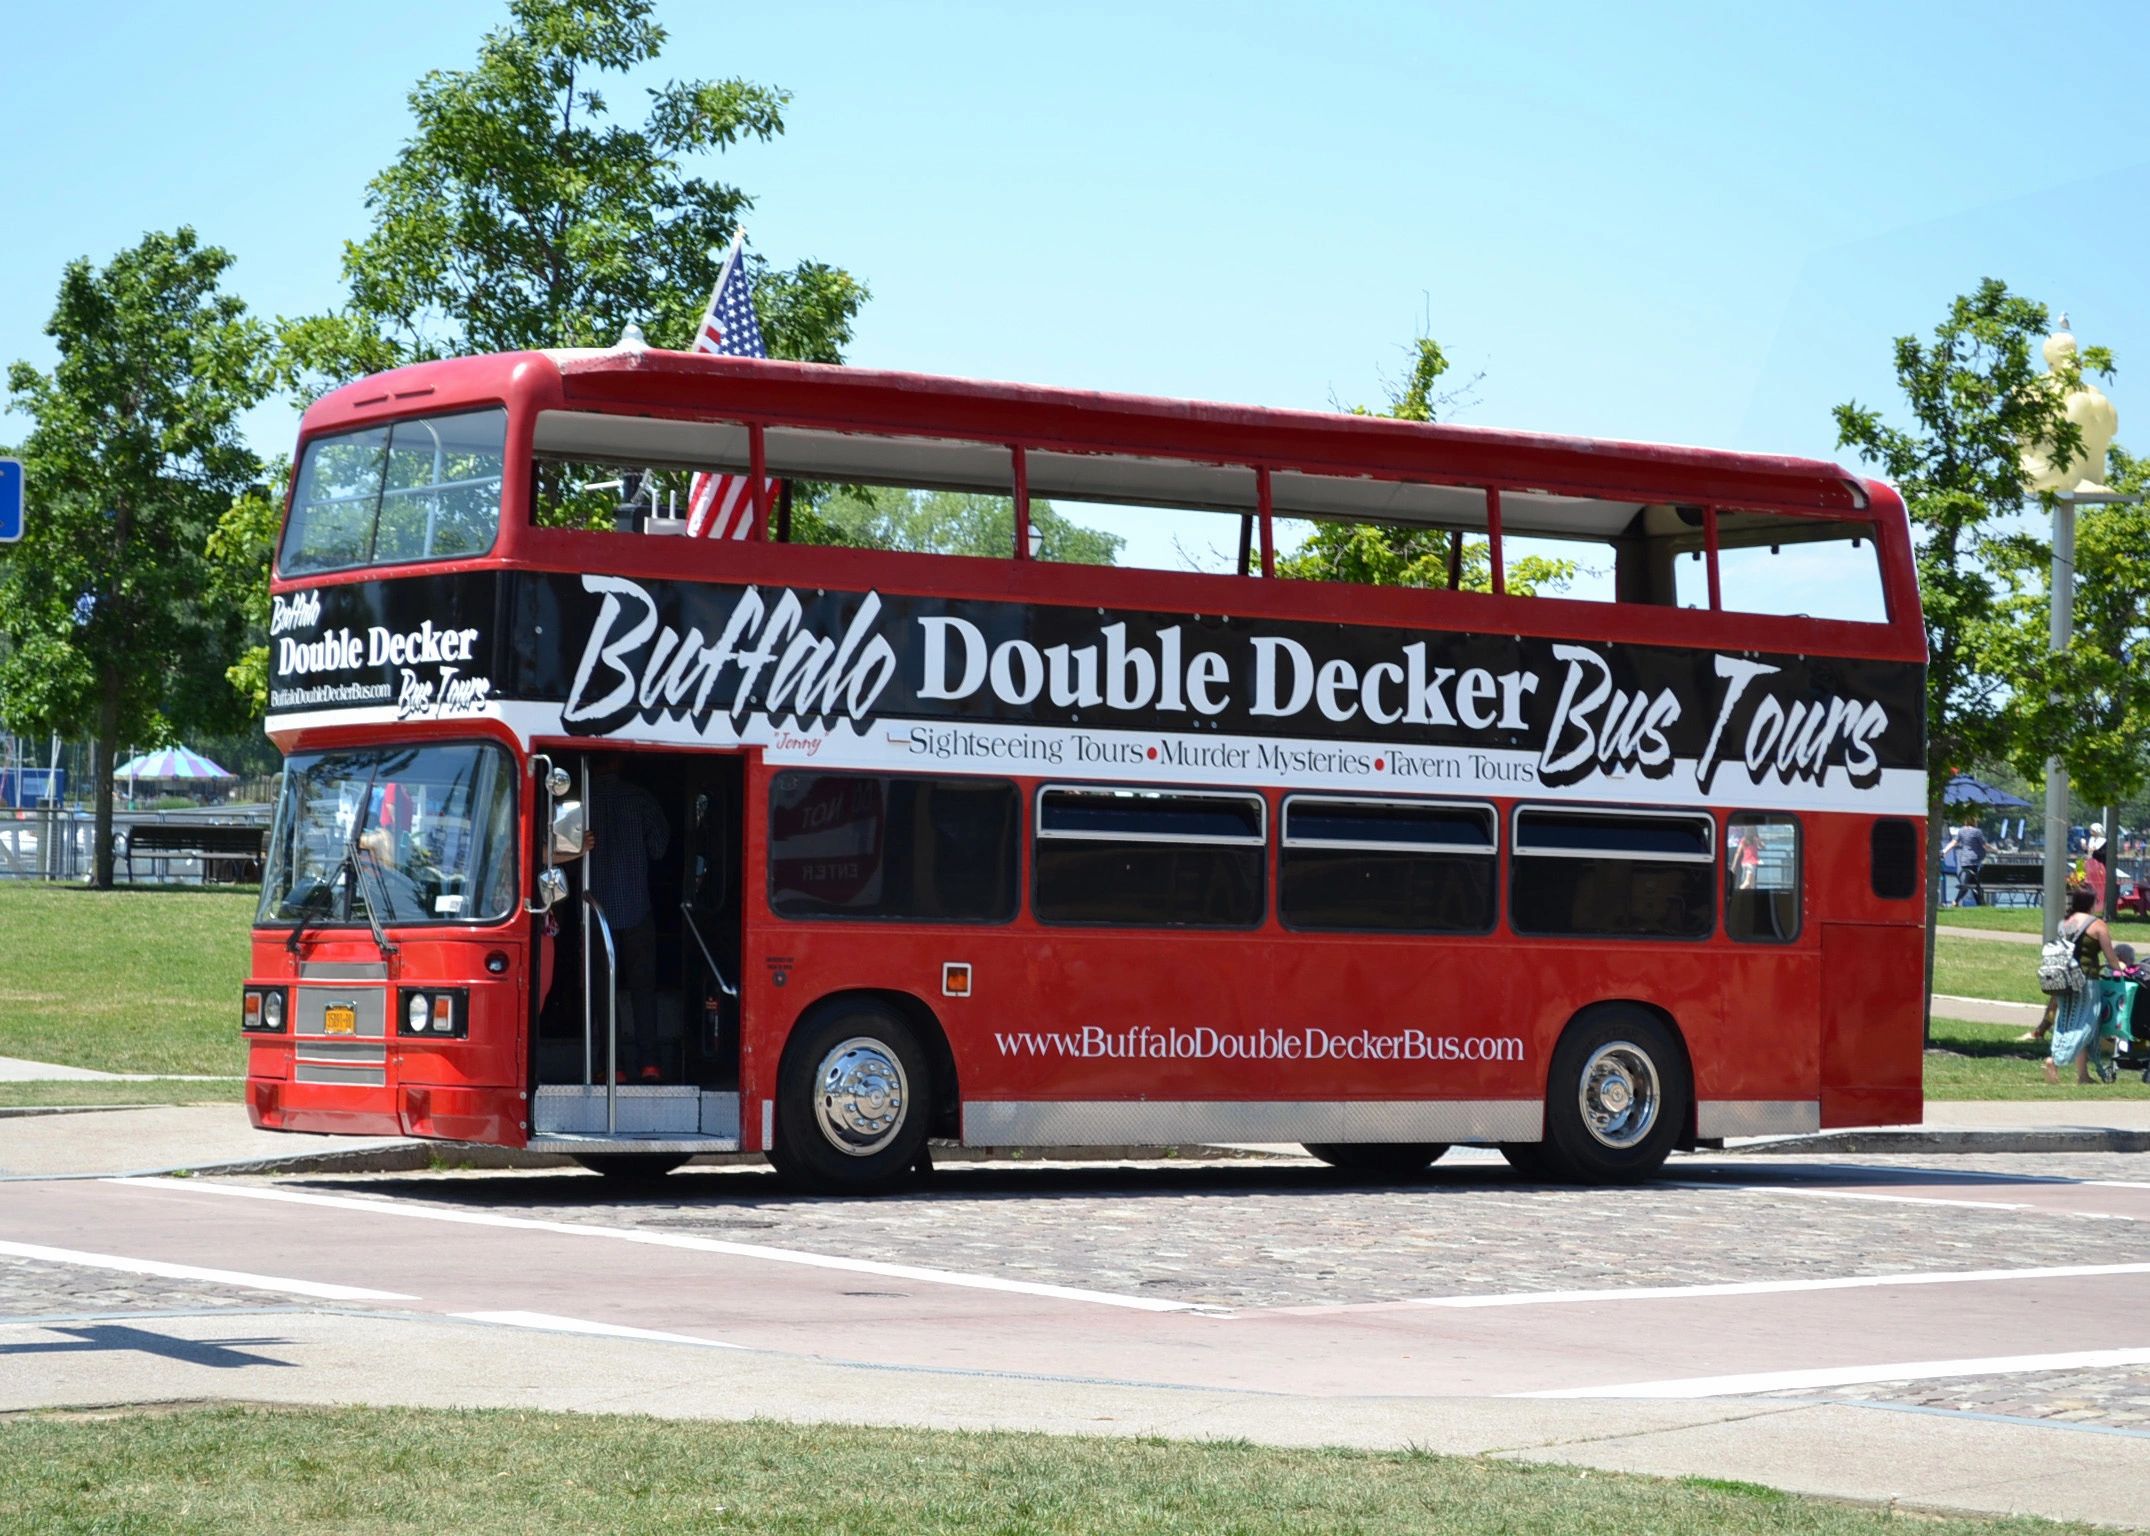 Buffalo Double Decker Bus Tours